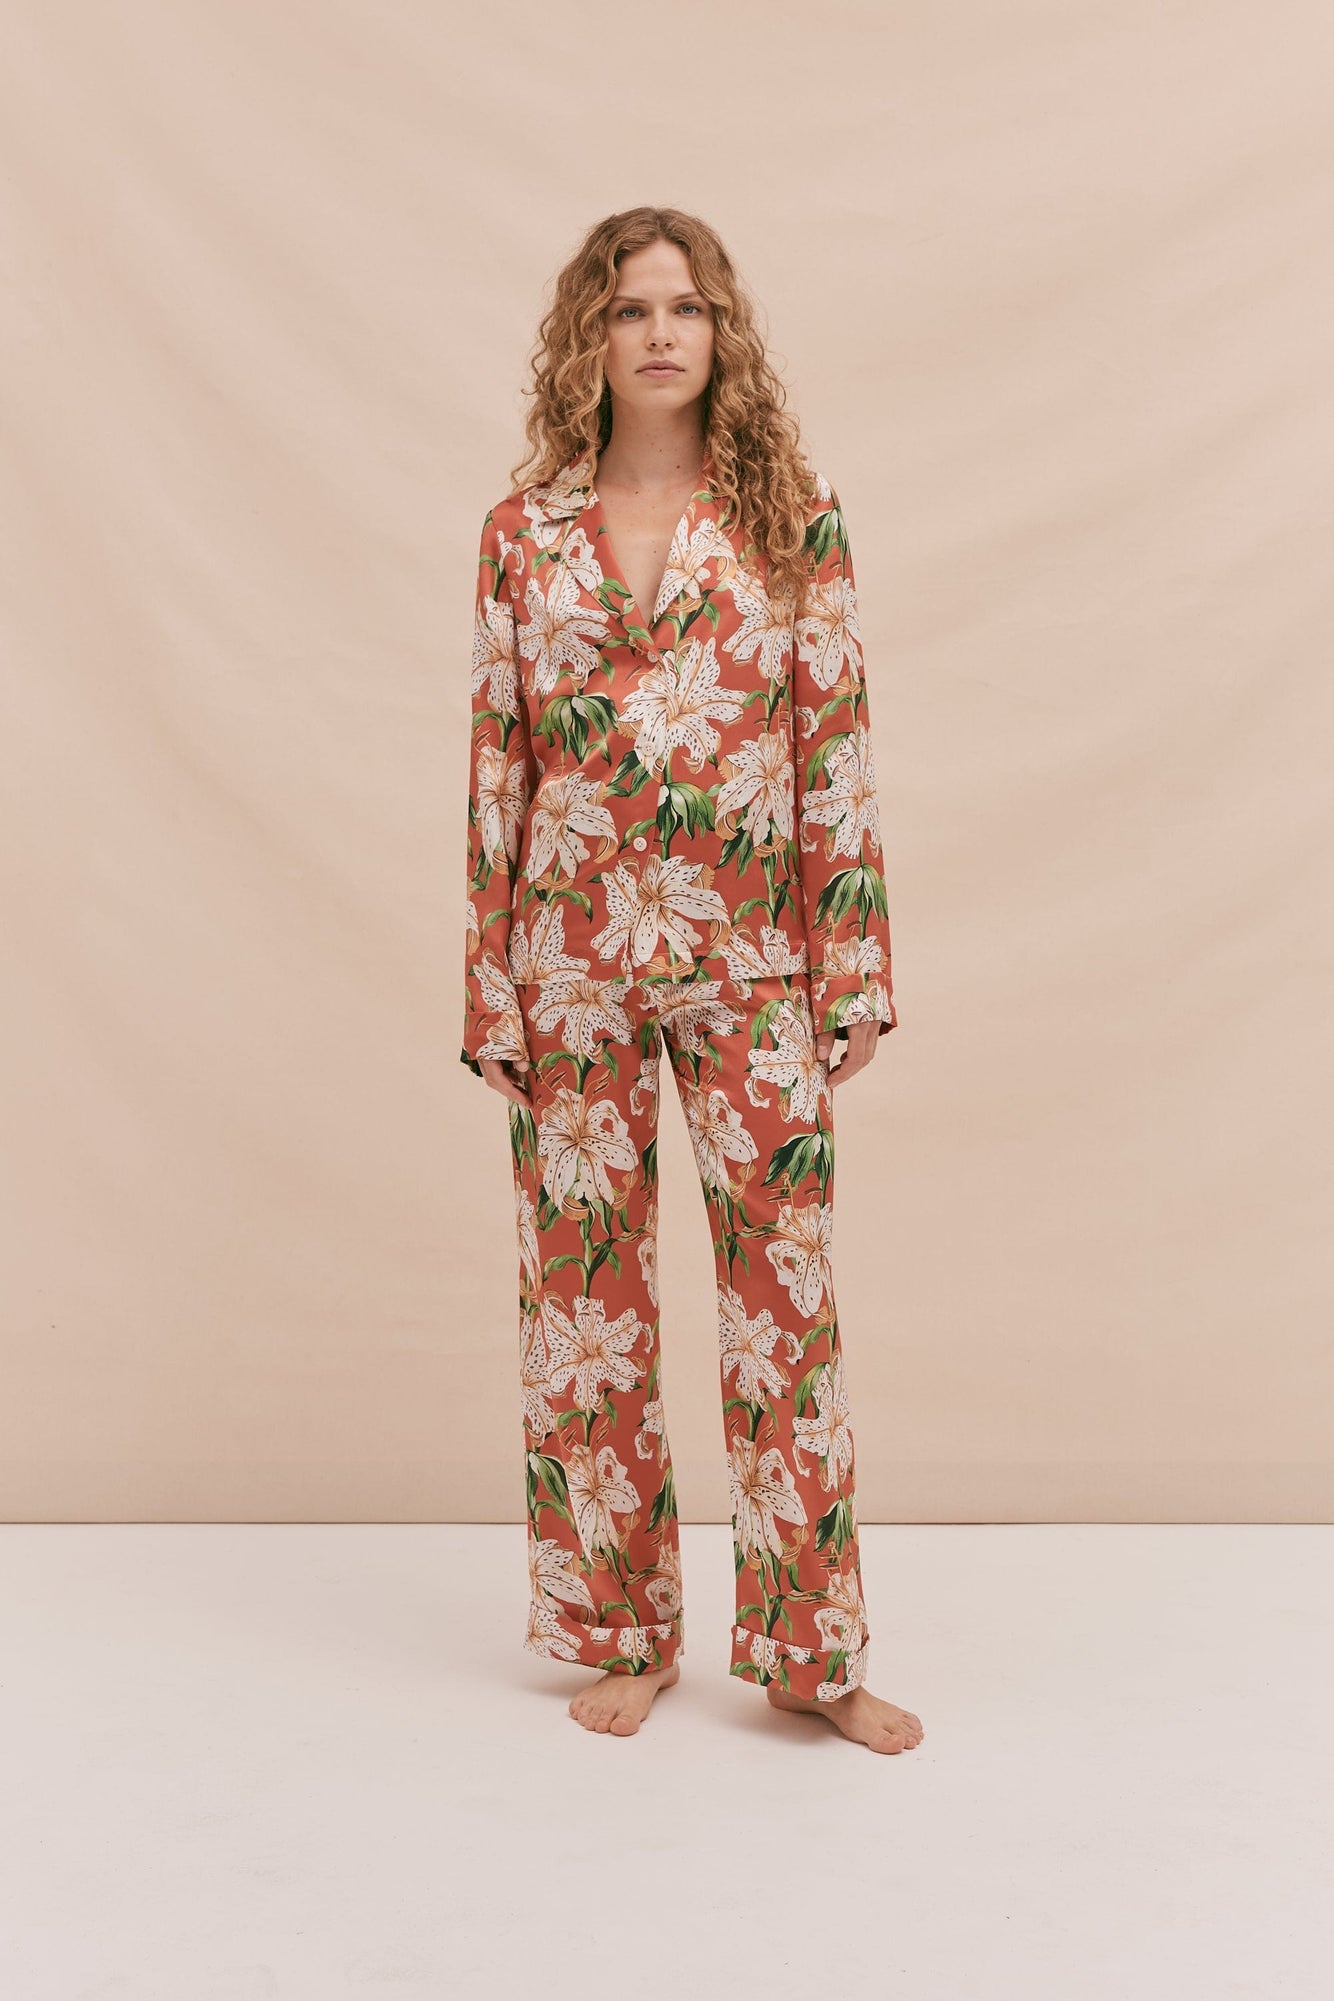 Women's Pyjama Sets | Women's Designer PJs – Desmond & Dempsey